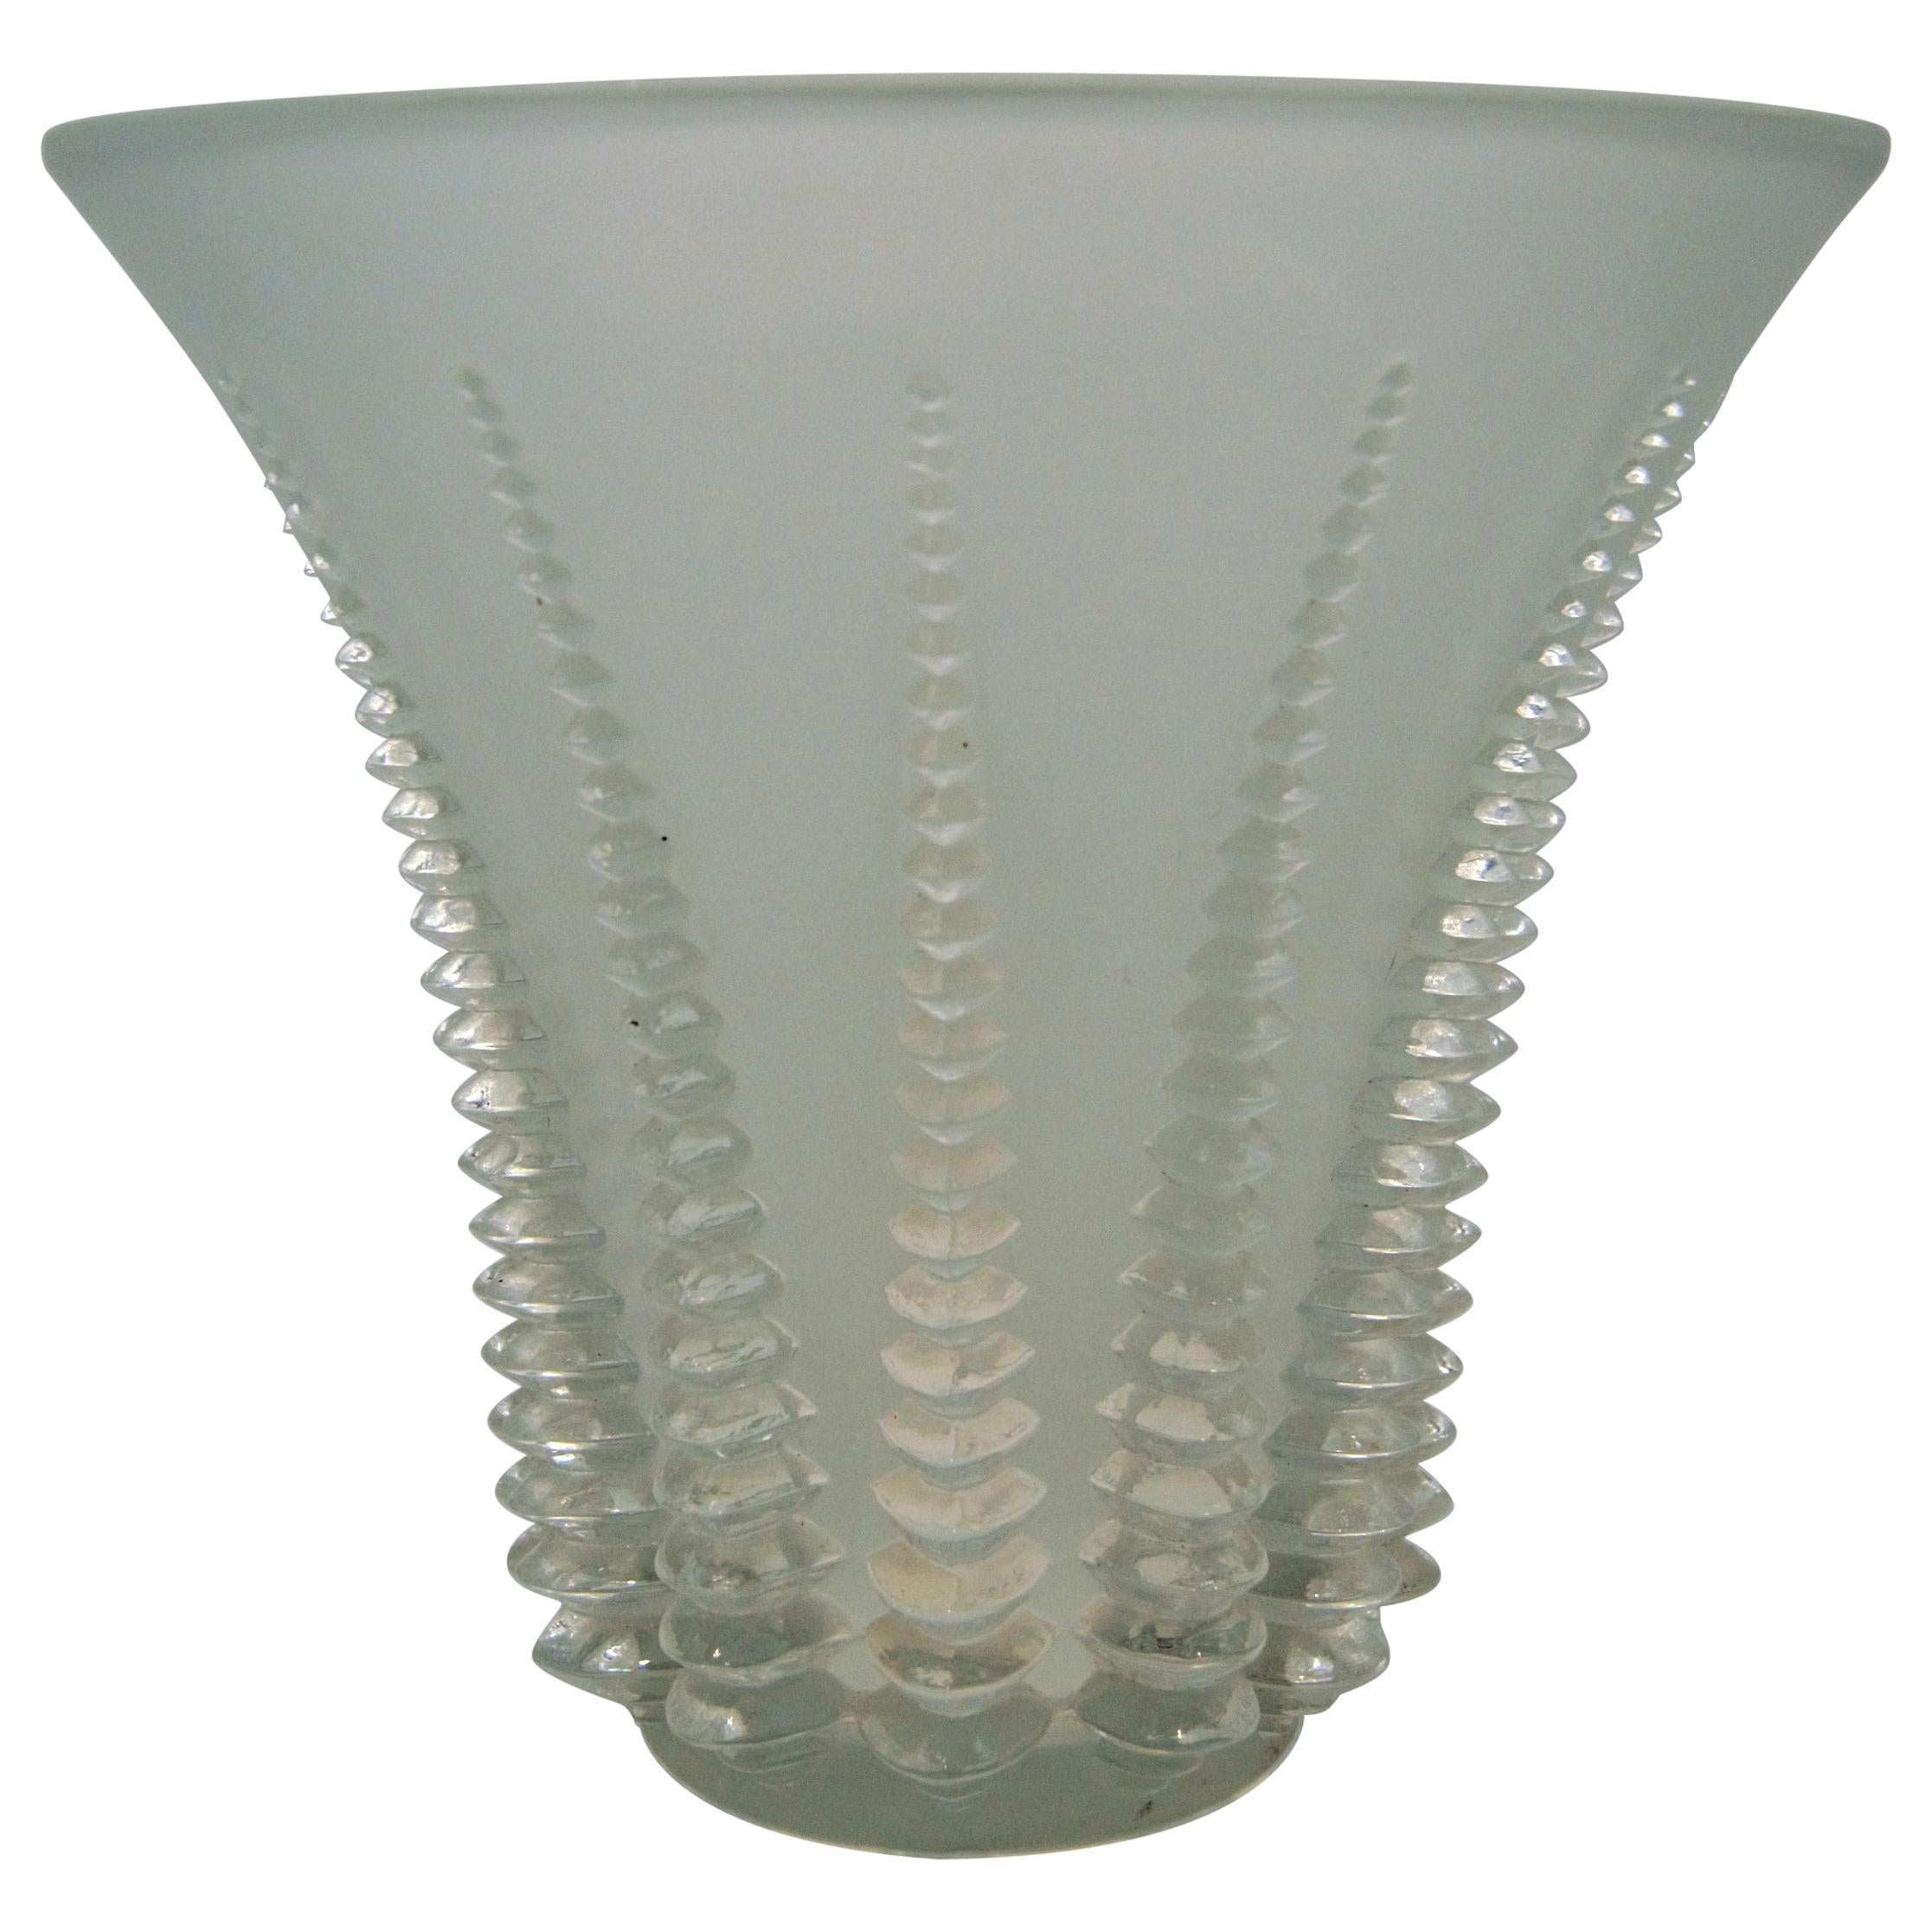 René Lalique “Font -Romeu“ Vase